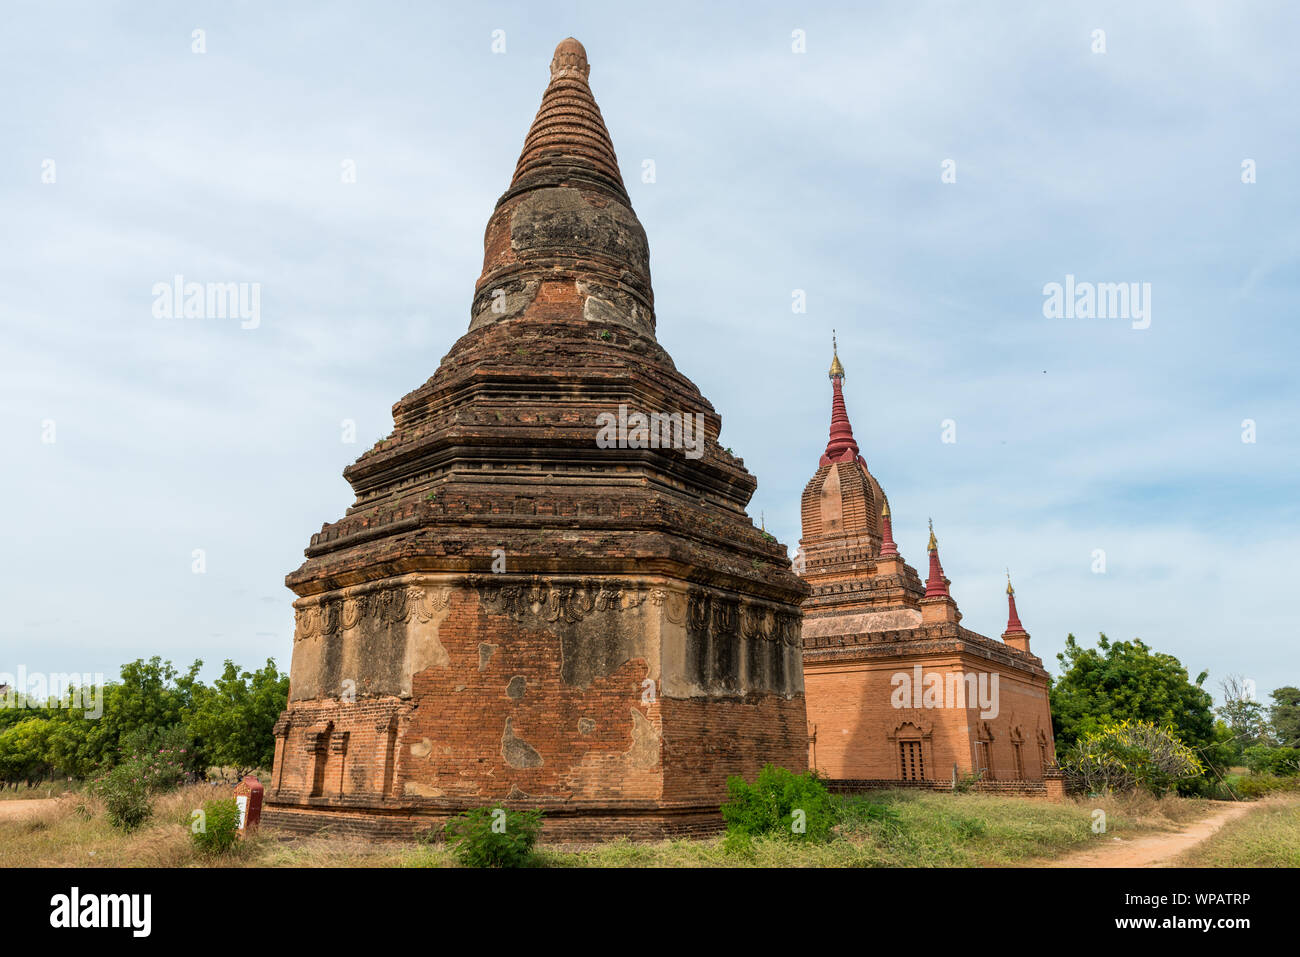 Photo grand angle de l'ancienne pagode bouddhiste et du temple, les bâtiments de l'étonnant parc archéologique à Bagan, Myanmar Banque D'Images